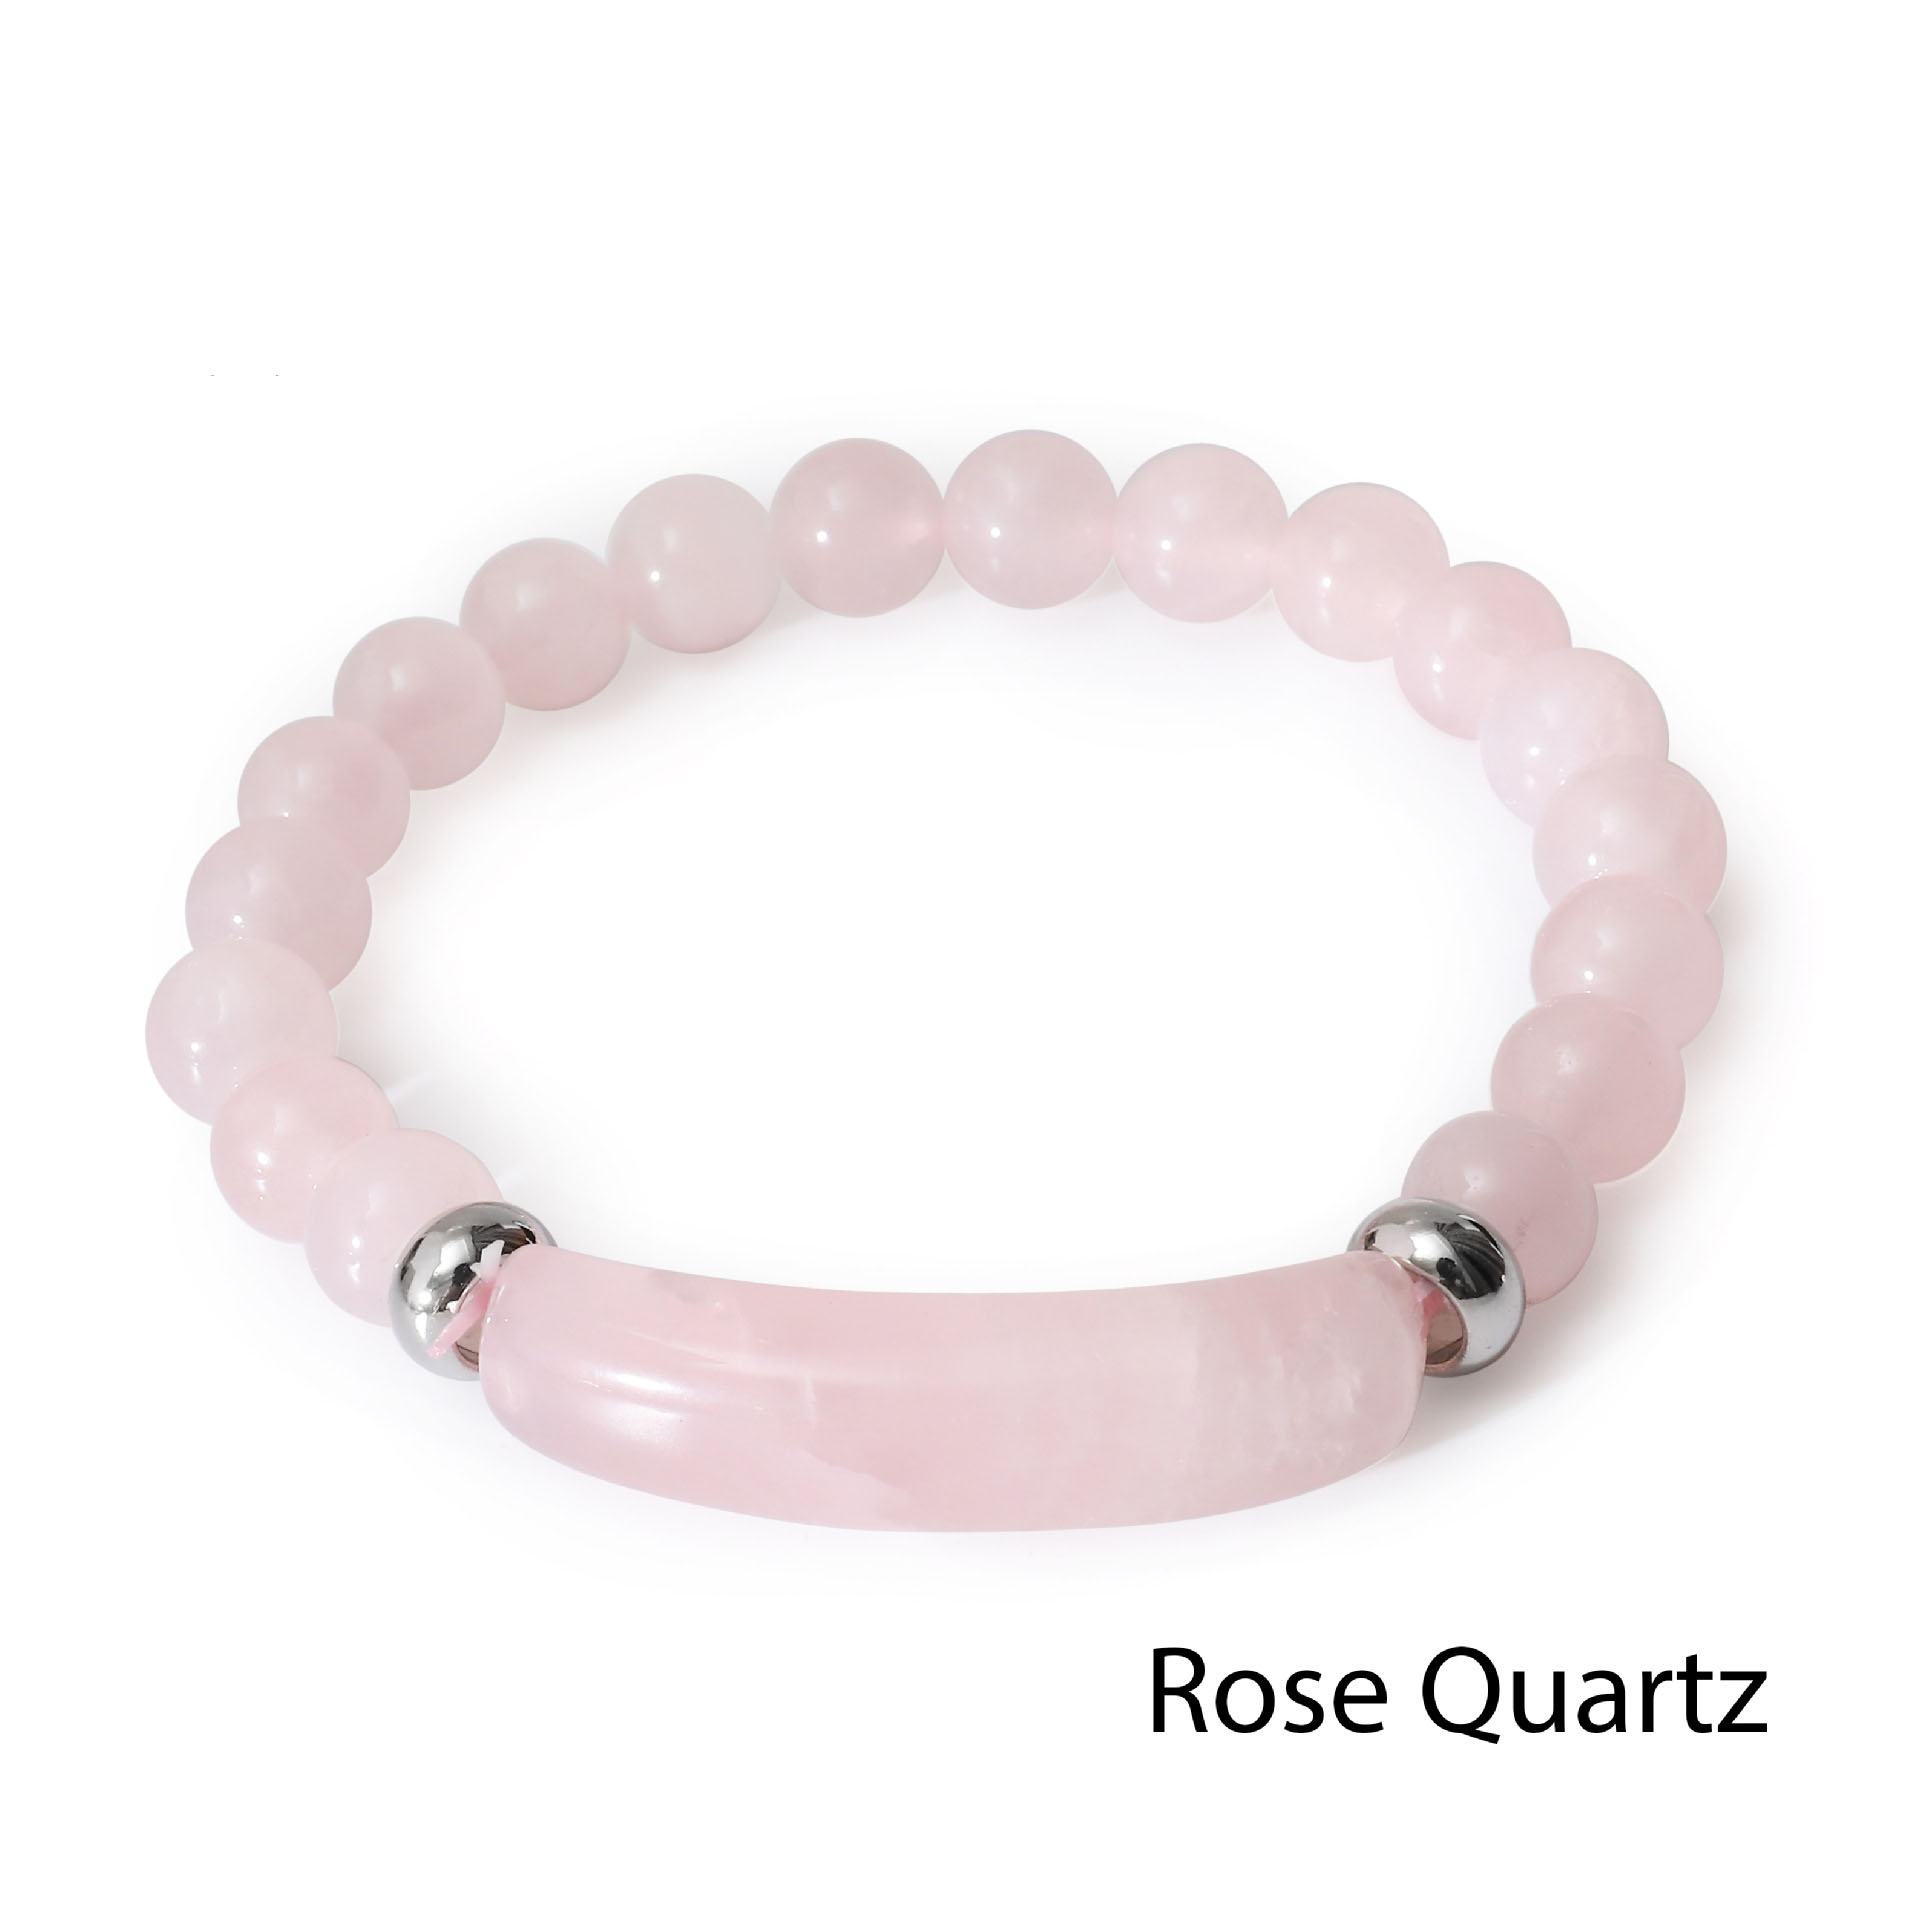 1:Rose Quartz